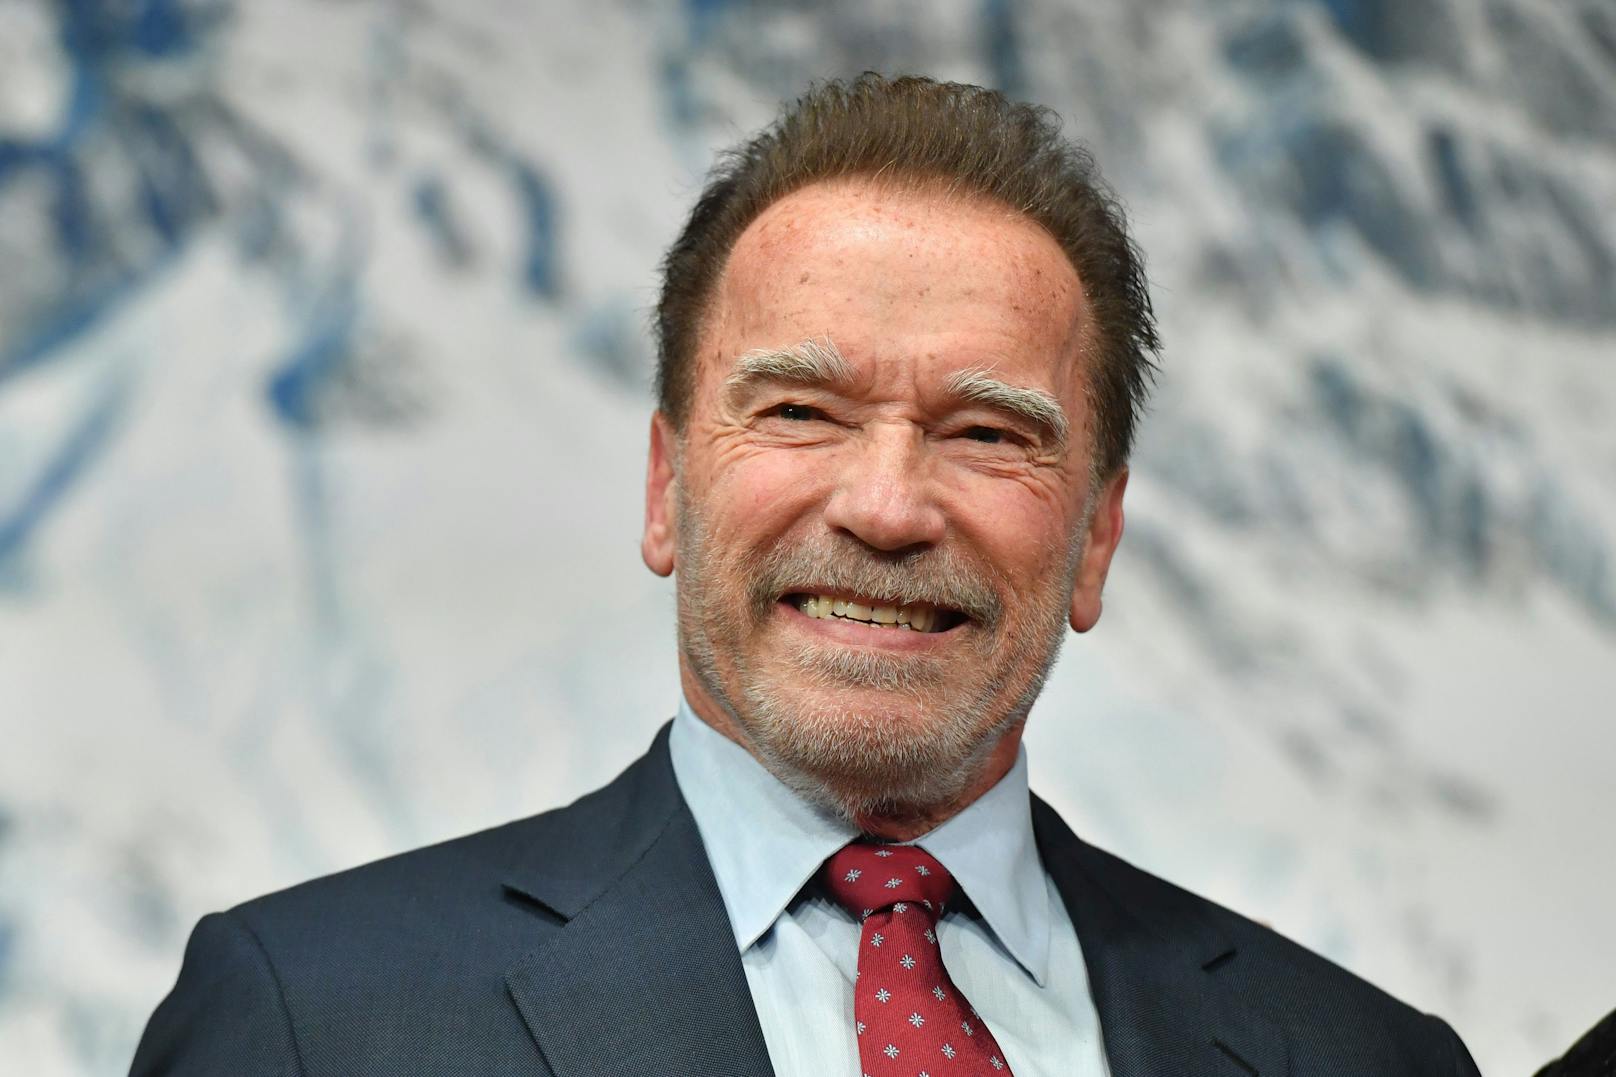 Unter dem Hammer! Bei der diesjährigen Arnie-Auktion sammelte Schwarzenegger 1,2 Millionen Euro für die Umwelt.